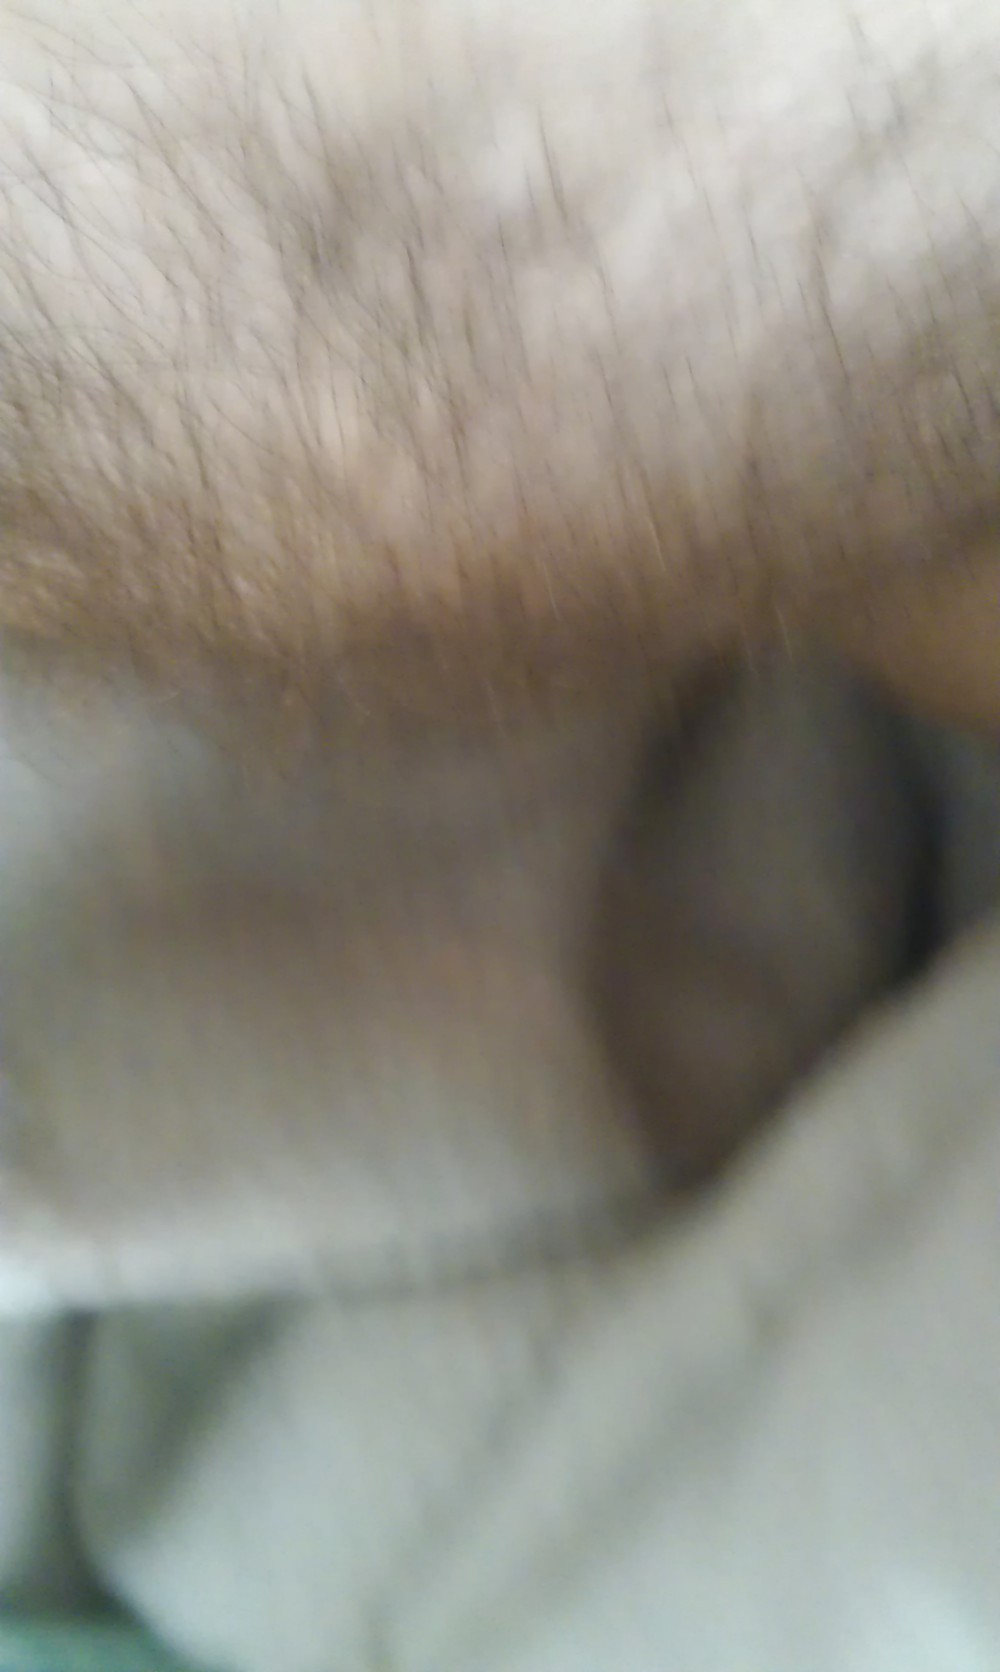 My hairy horny pussy